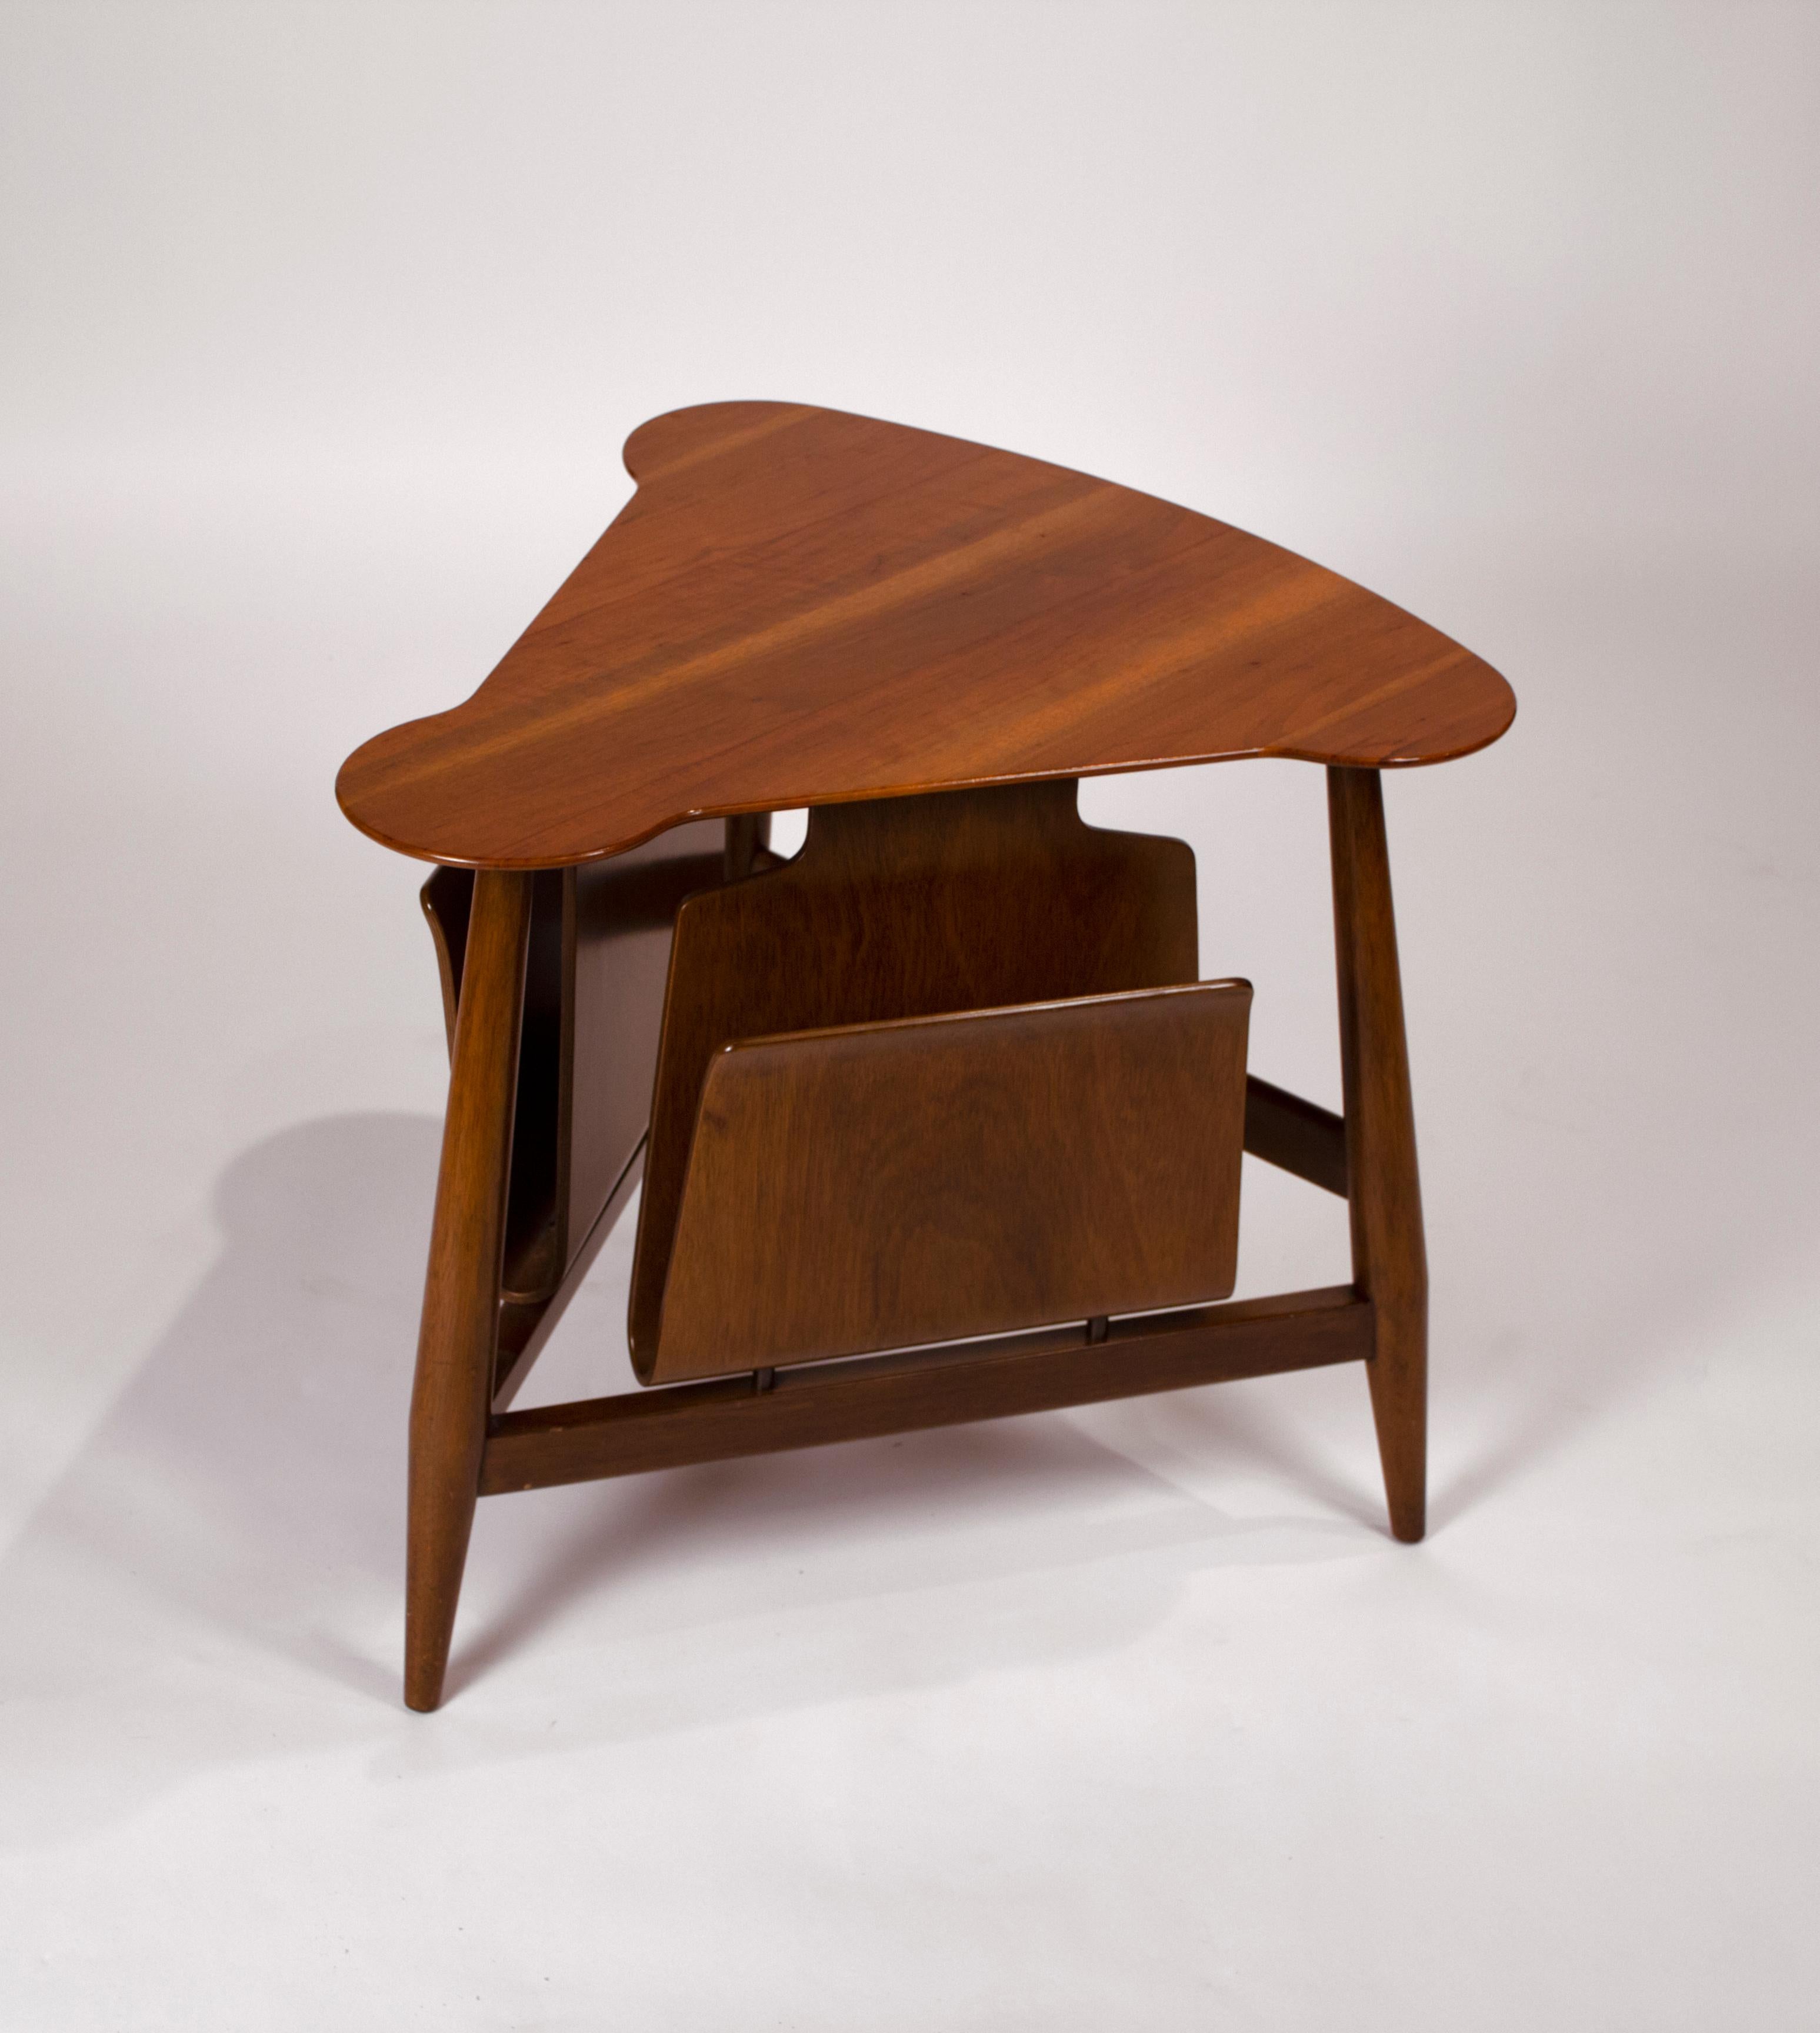 Dreieckiger Magazintisch Modell 5313 von Edward Wormley für Dunbar. Tisch besteht aus zwei Mahagoni-Magazinfächern, Platte aus gemasertem Walnussholz mit Mahagonisockel, schöner Originalzustand.